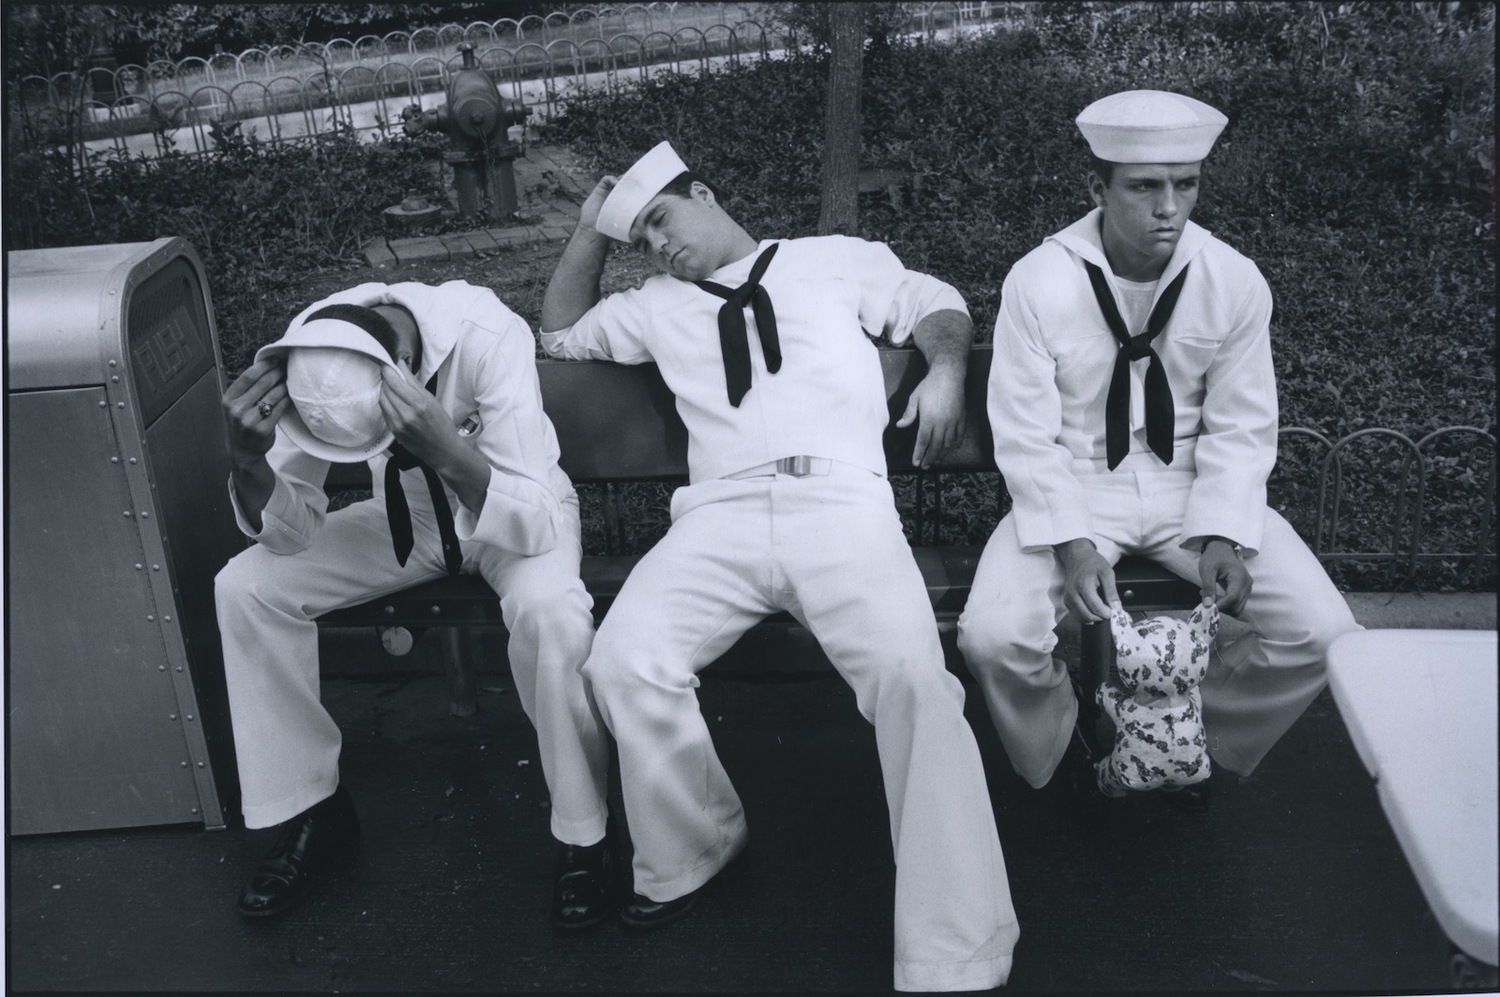 Three sailors, Great America, Illinois, 1981